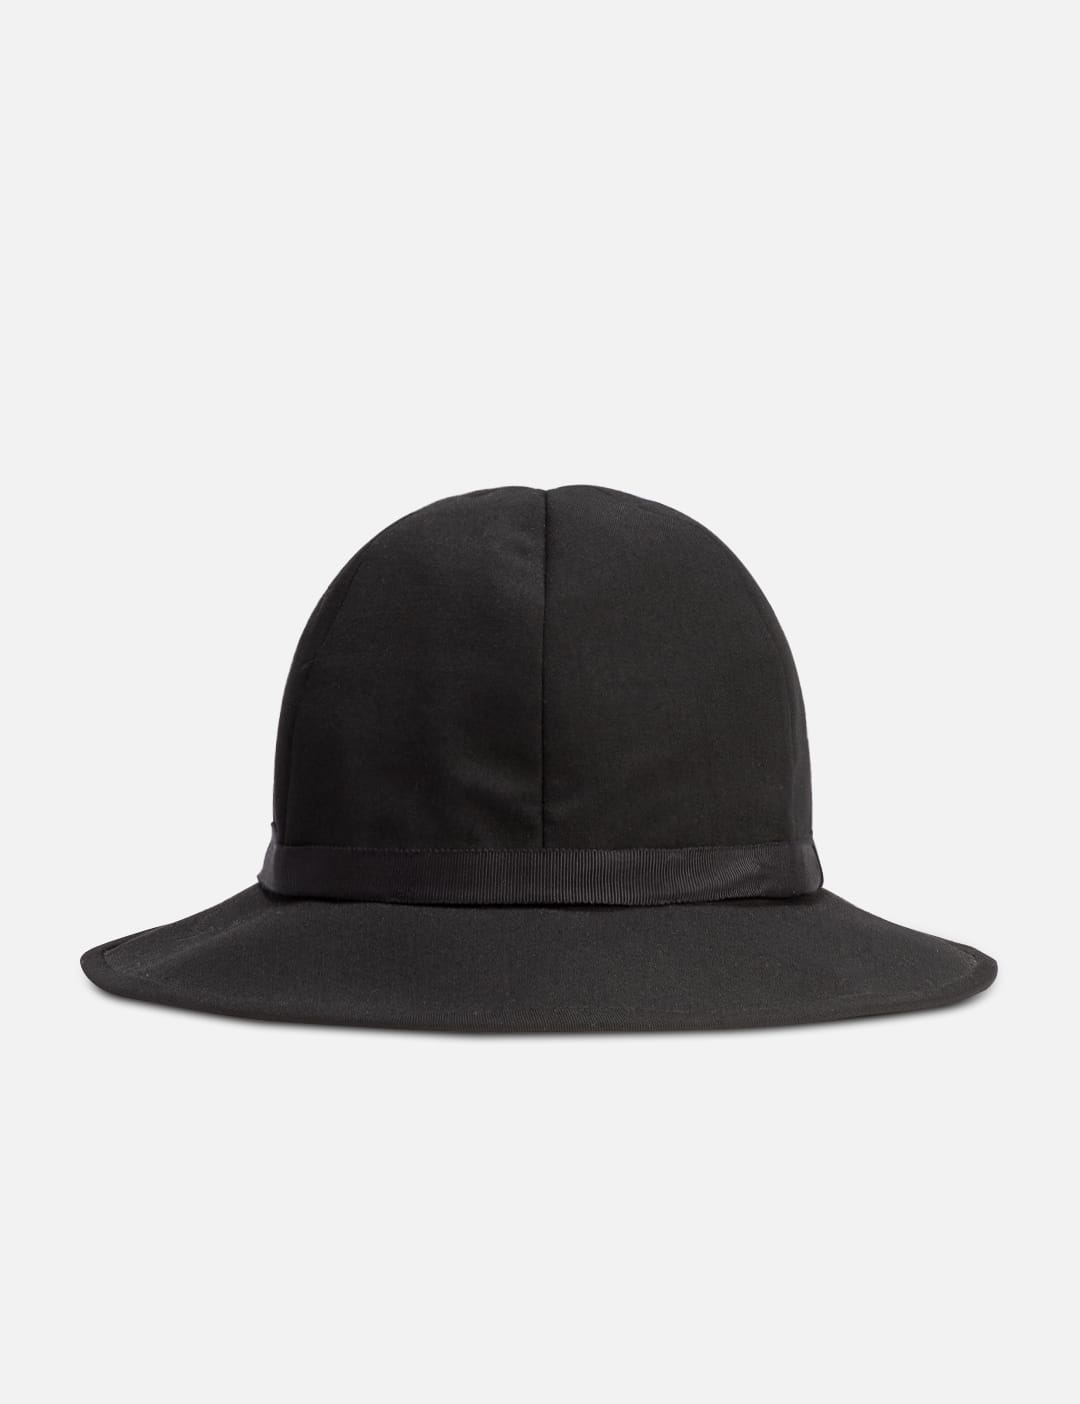 帽子新到中古货品| HBX - HYPEBEAST 为您搜罗全球潮流时尚品牌